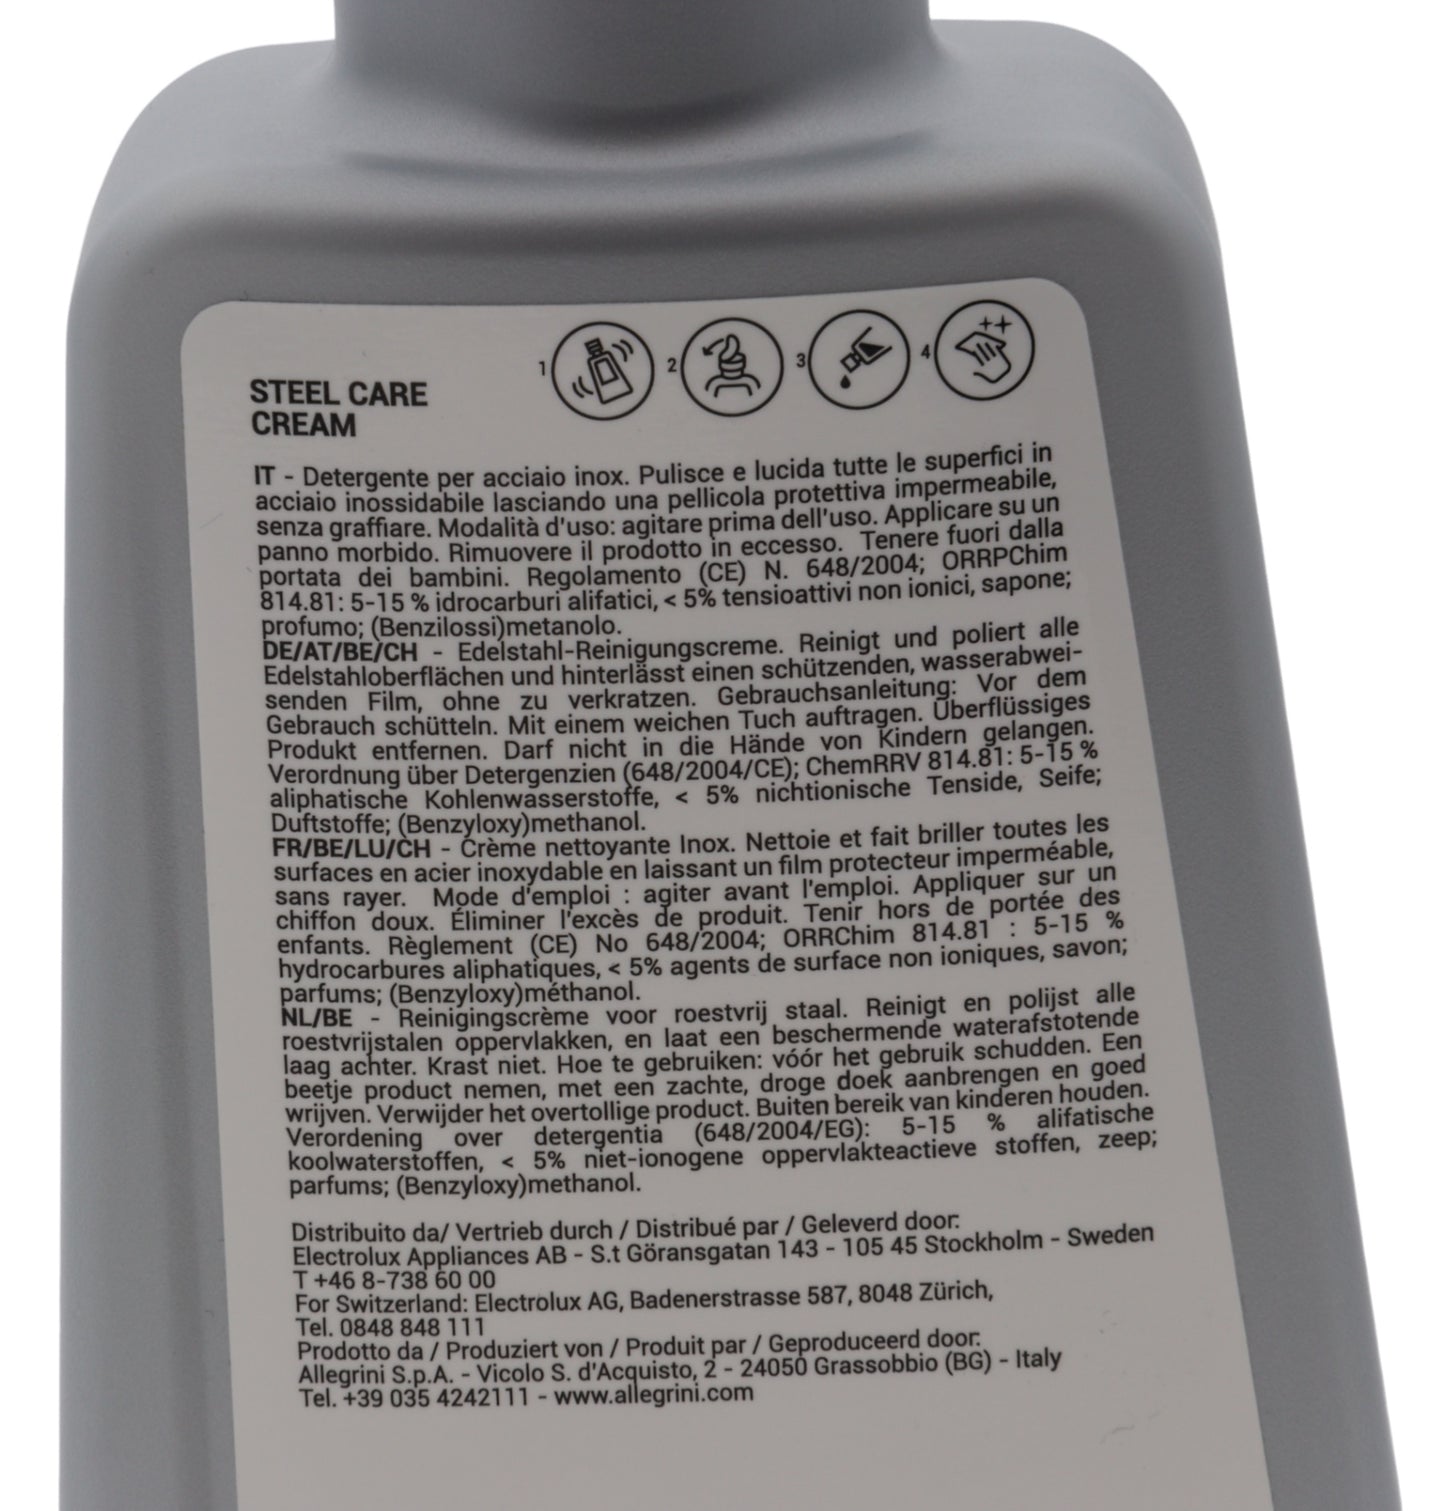 Electrolux detergente crema Steel Care acciaio inox pellicola protettiva lucida